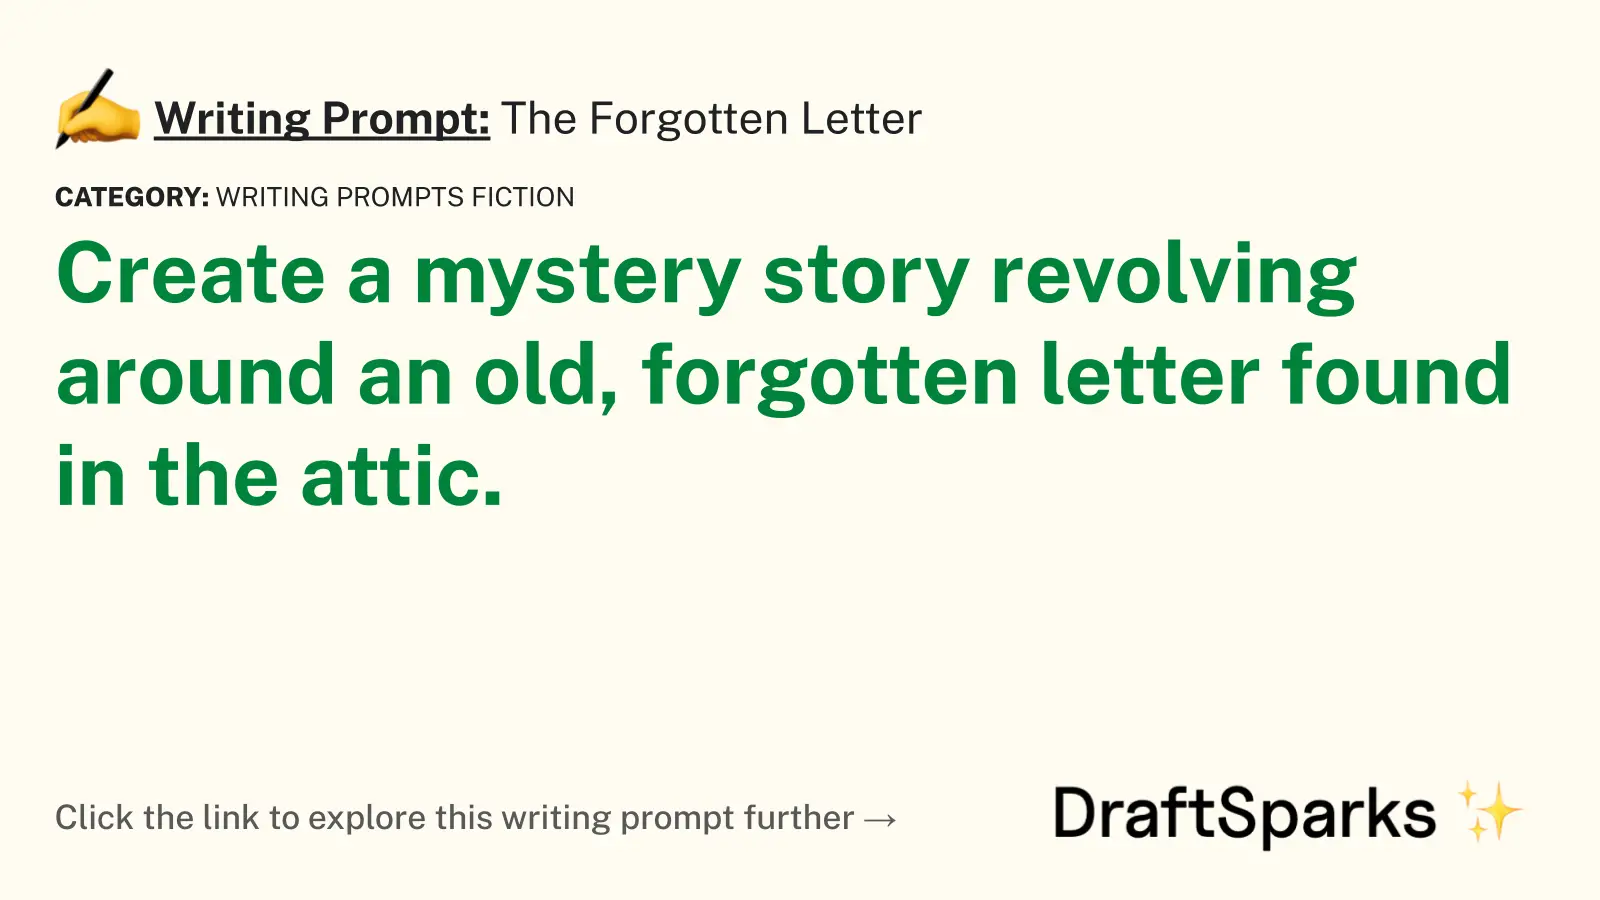 The Forgotten Letter